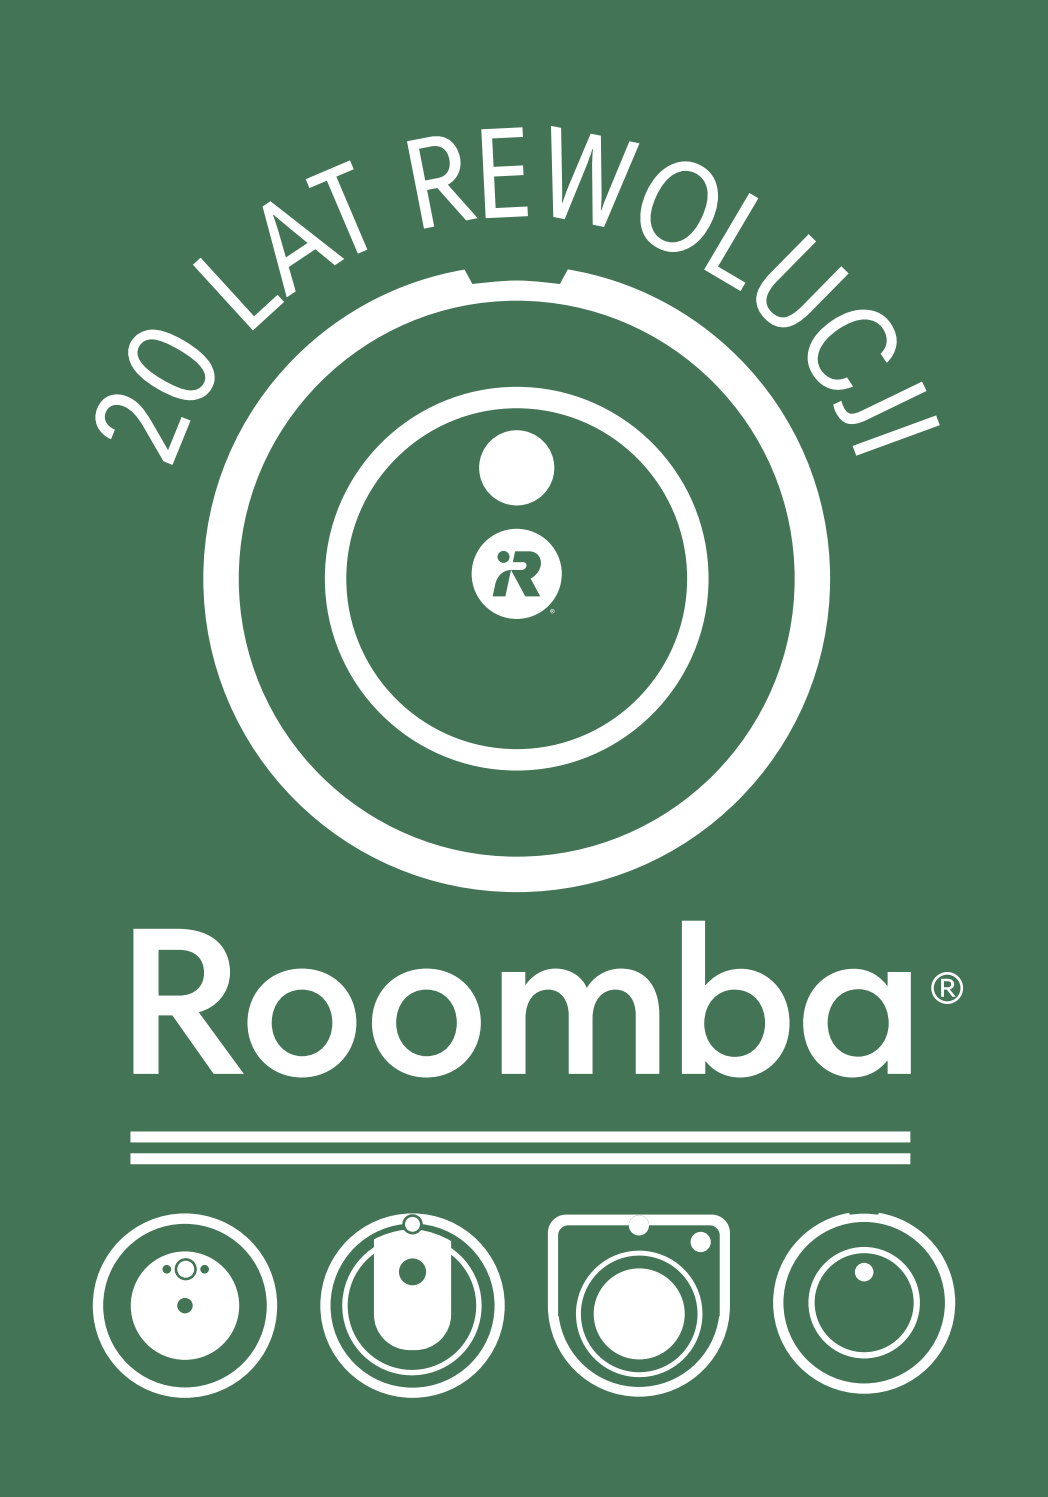 Roomba - 20 lat rewolucji